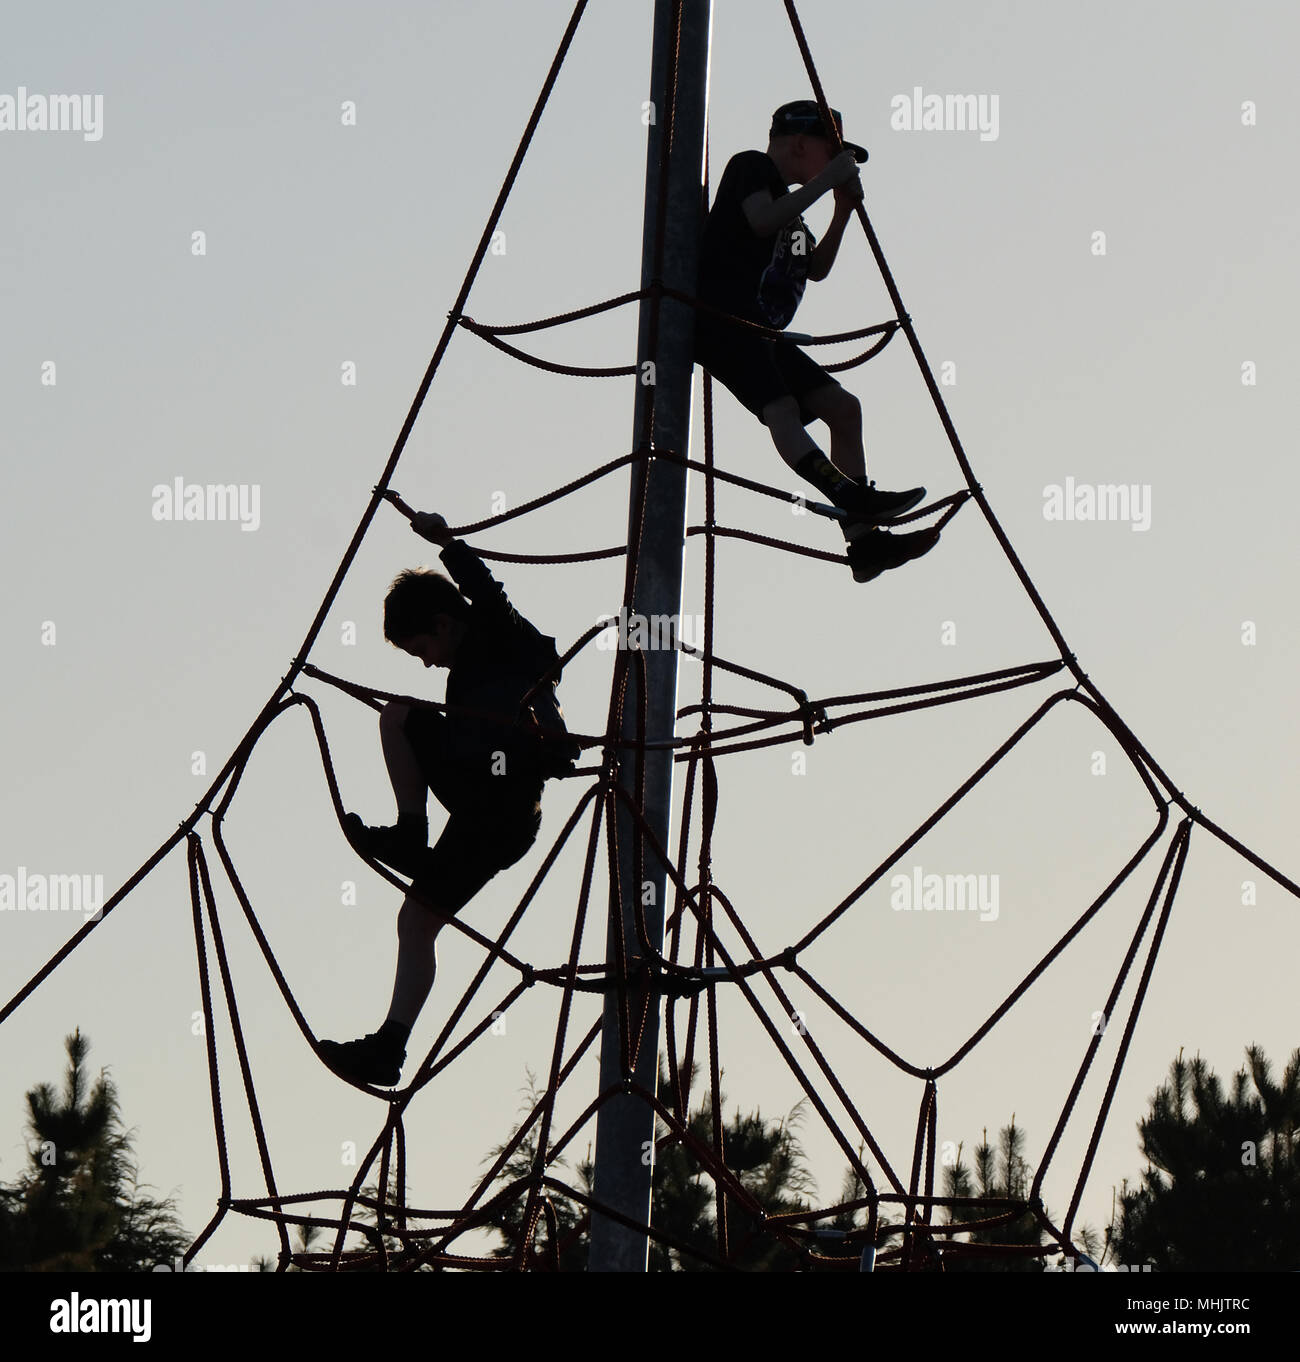 Kinder spielen auf modernes hohes Klettergerüst mit Seilen und Polen in  advewnture Spielplatz Stockfotografie - Alamy